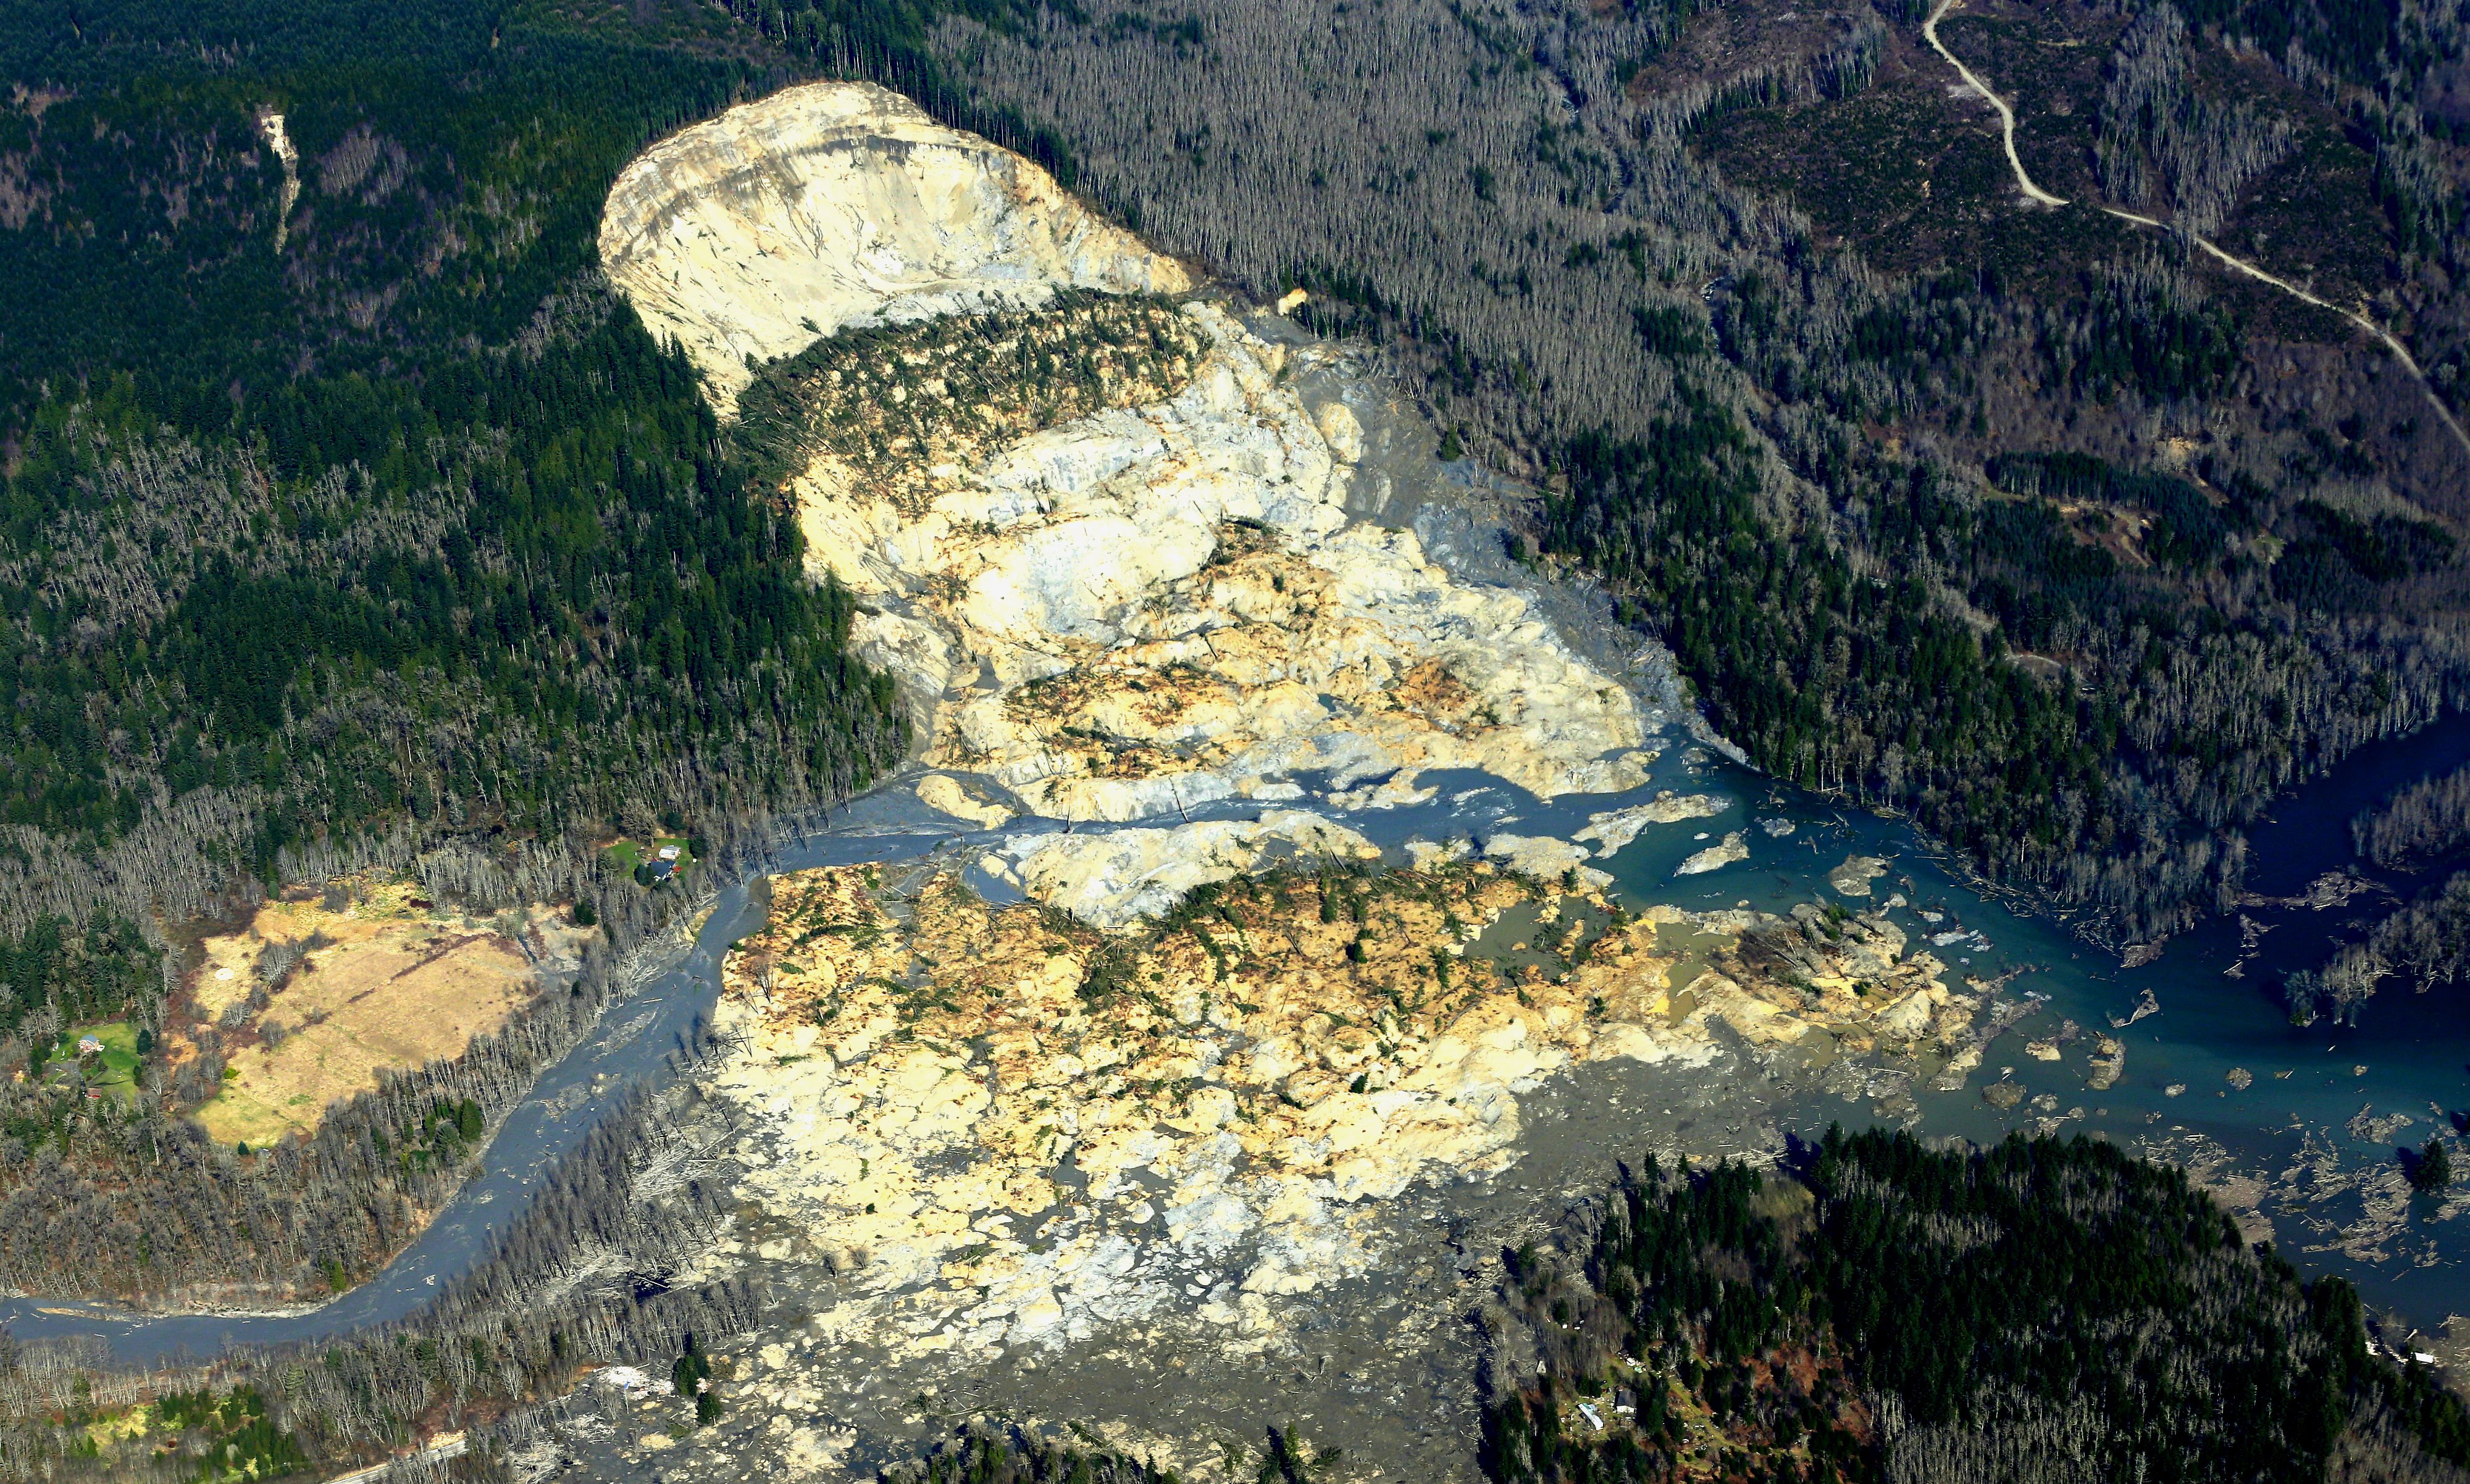 snohomish, Mudslide, Landslide, Nature, Natural, Disaster, Landscape, Forest, Washington, River, Te Wallpaper